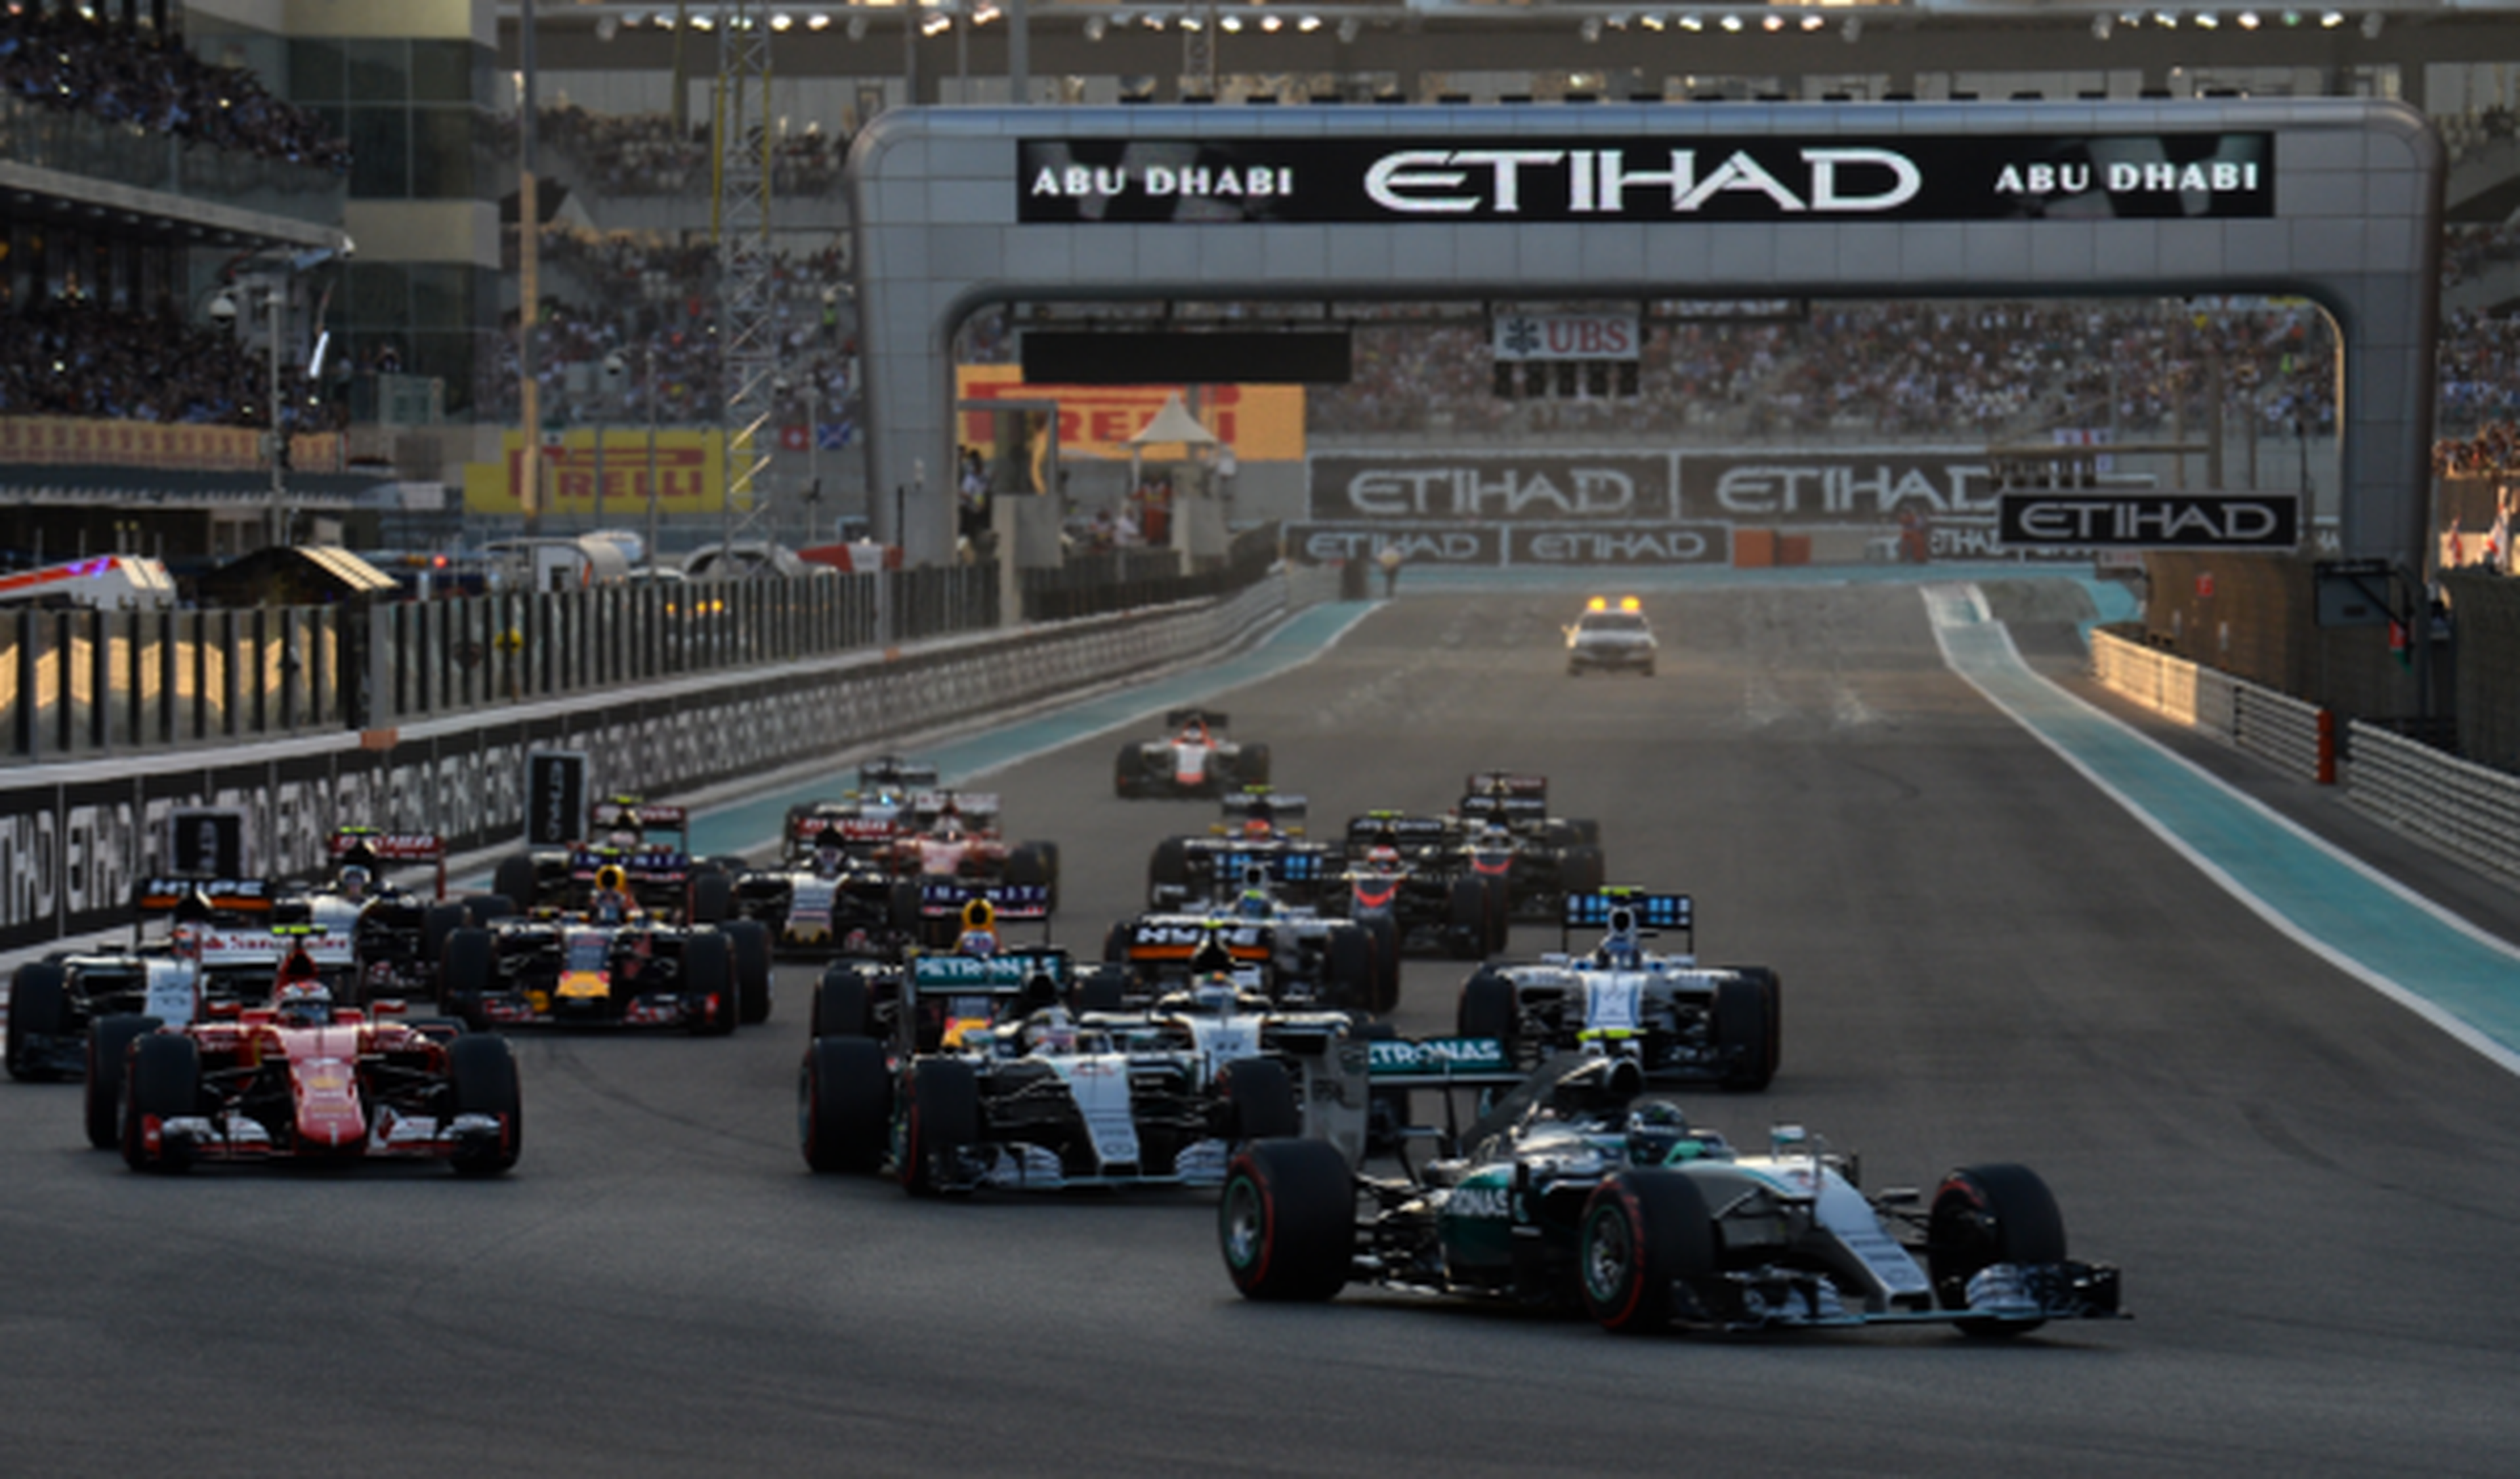 ¿Cuándo es la Fórmula 1? Horarios del GP Abu Dhabi 2016